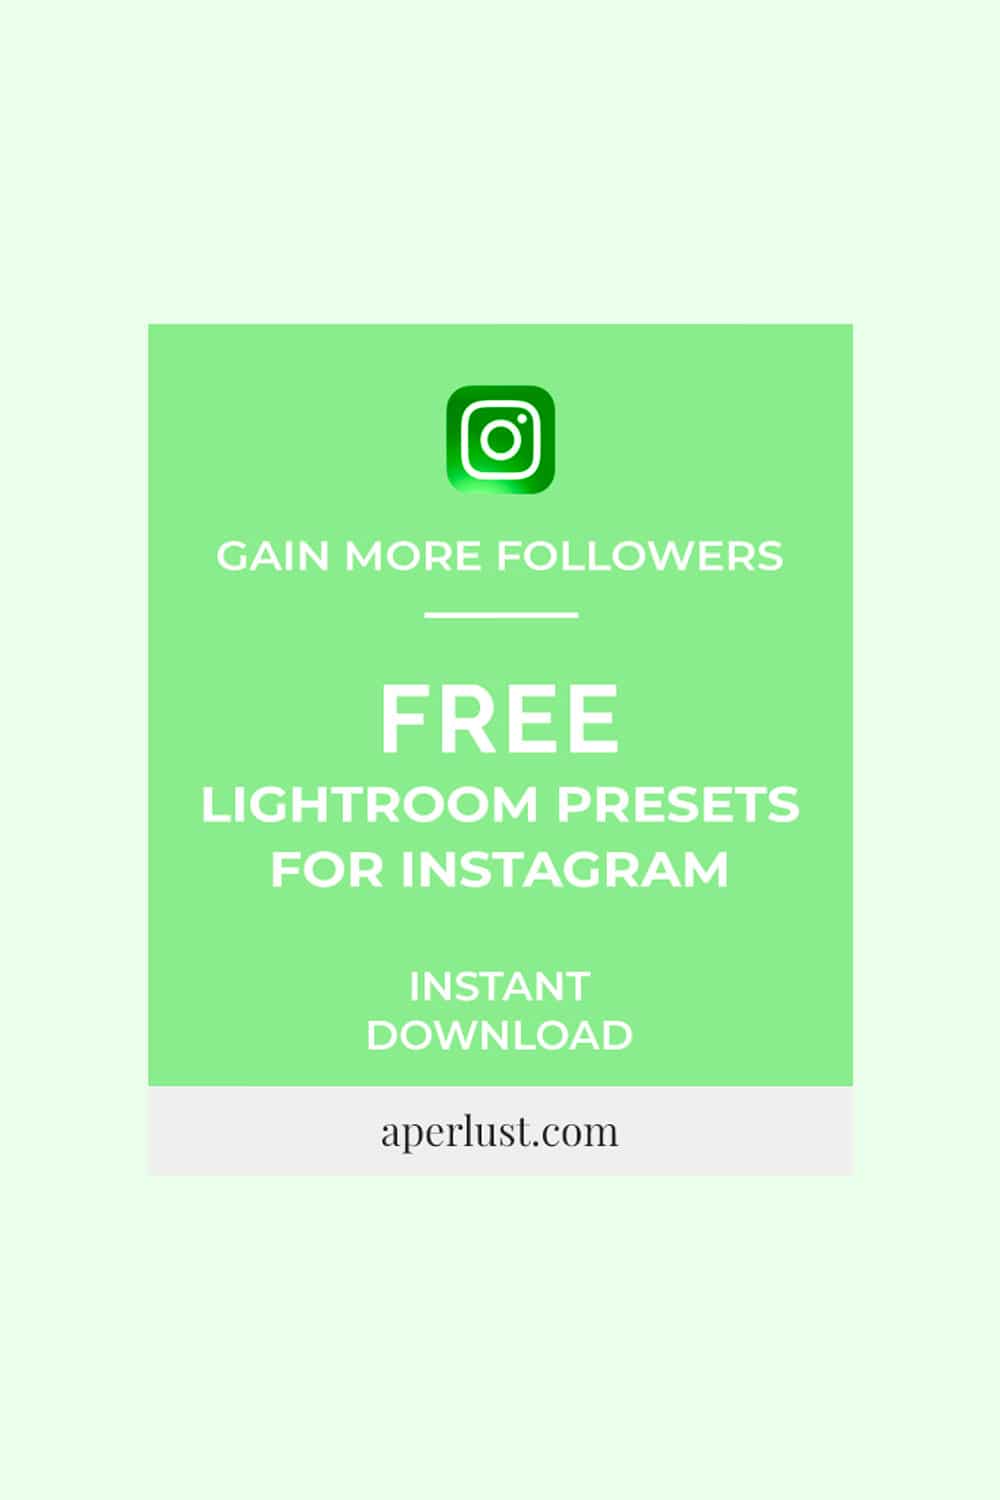 Free Lightroom Presets for Instagram Pinterest